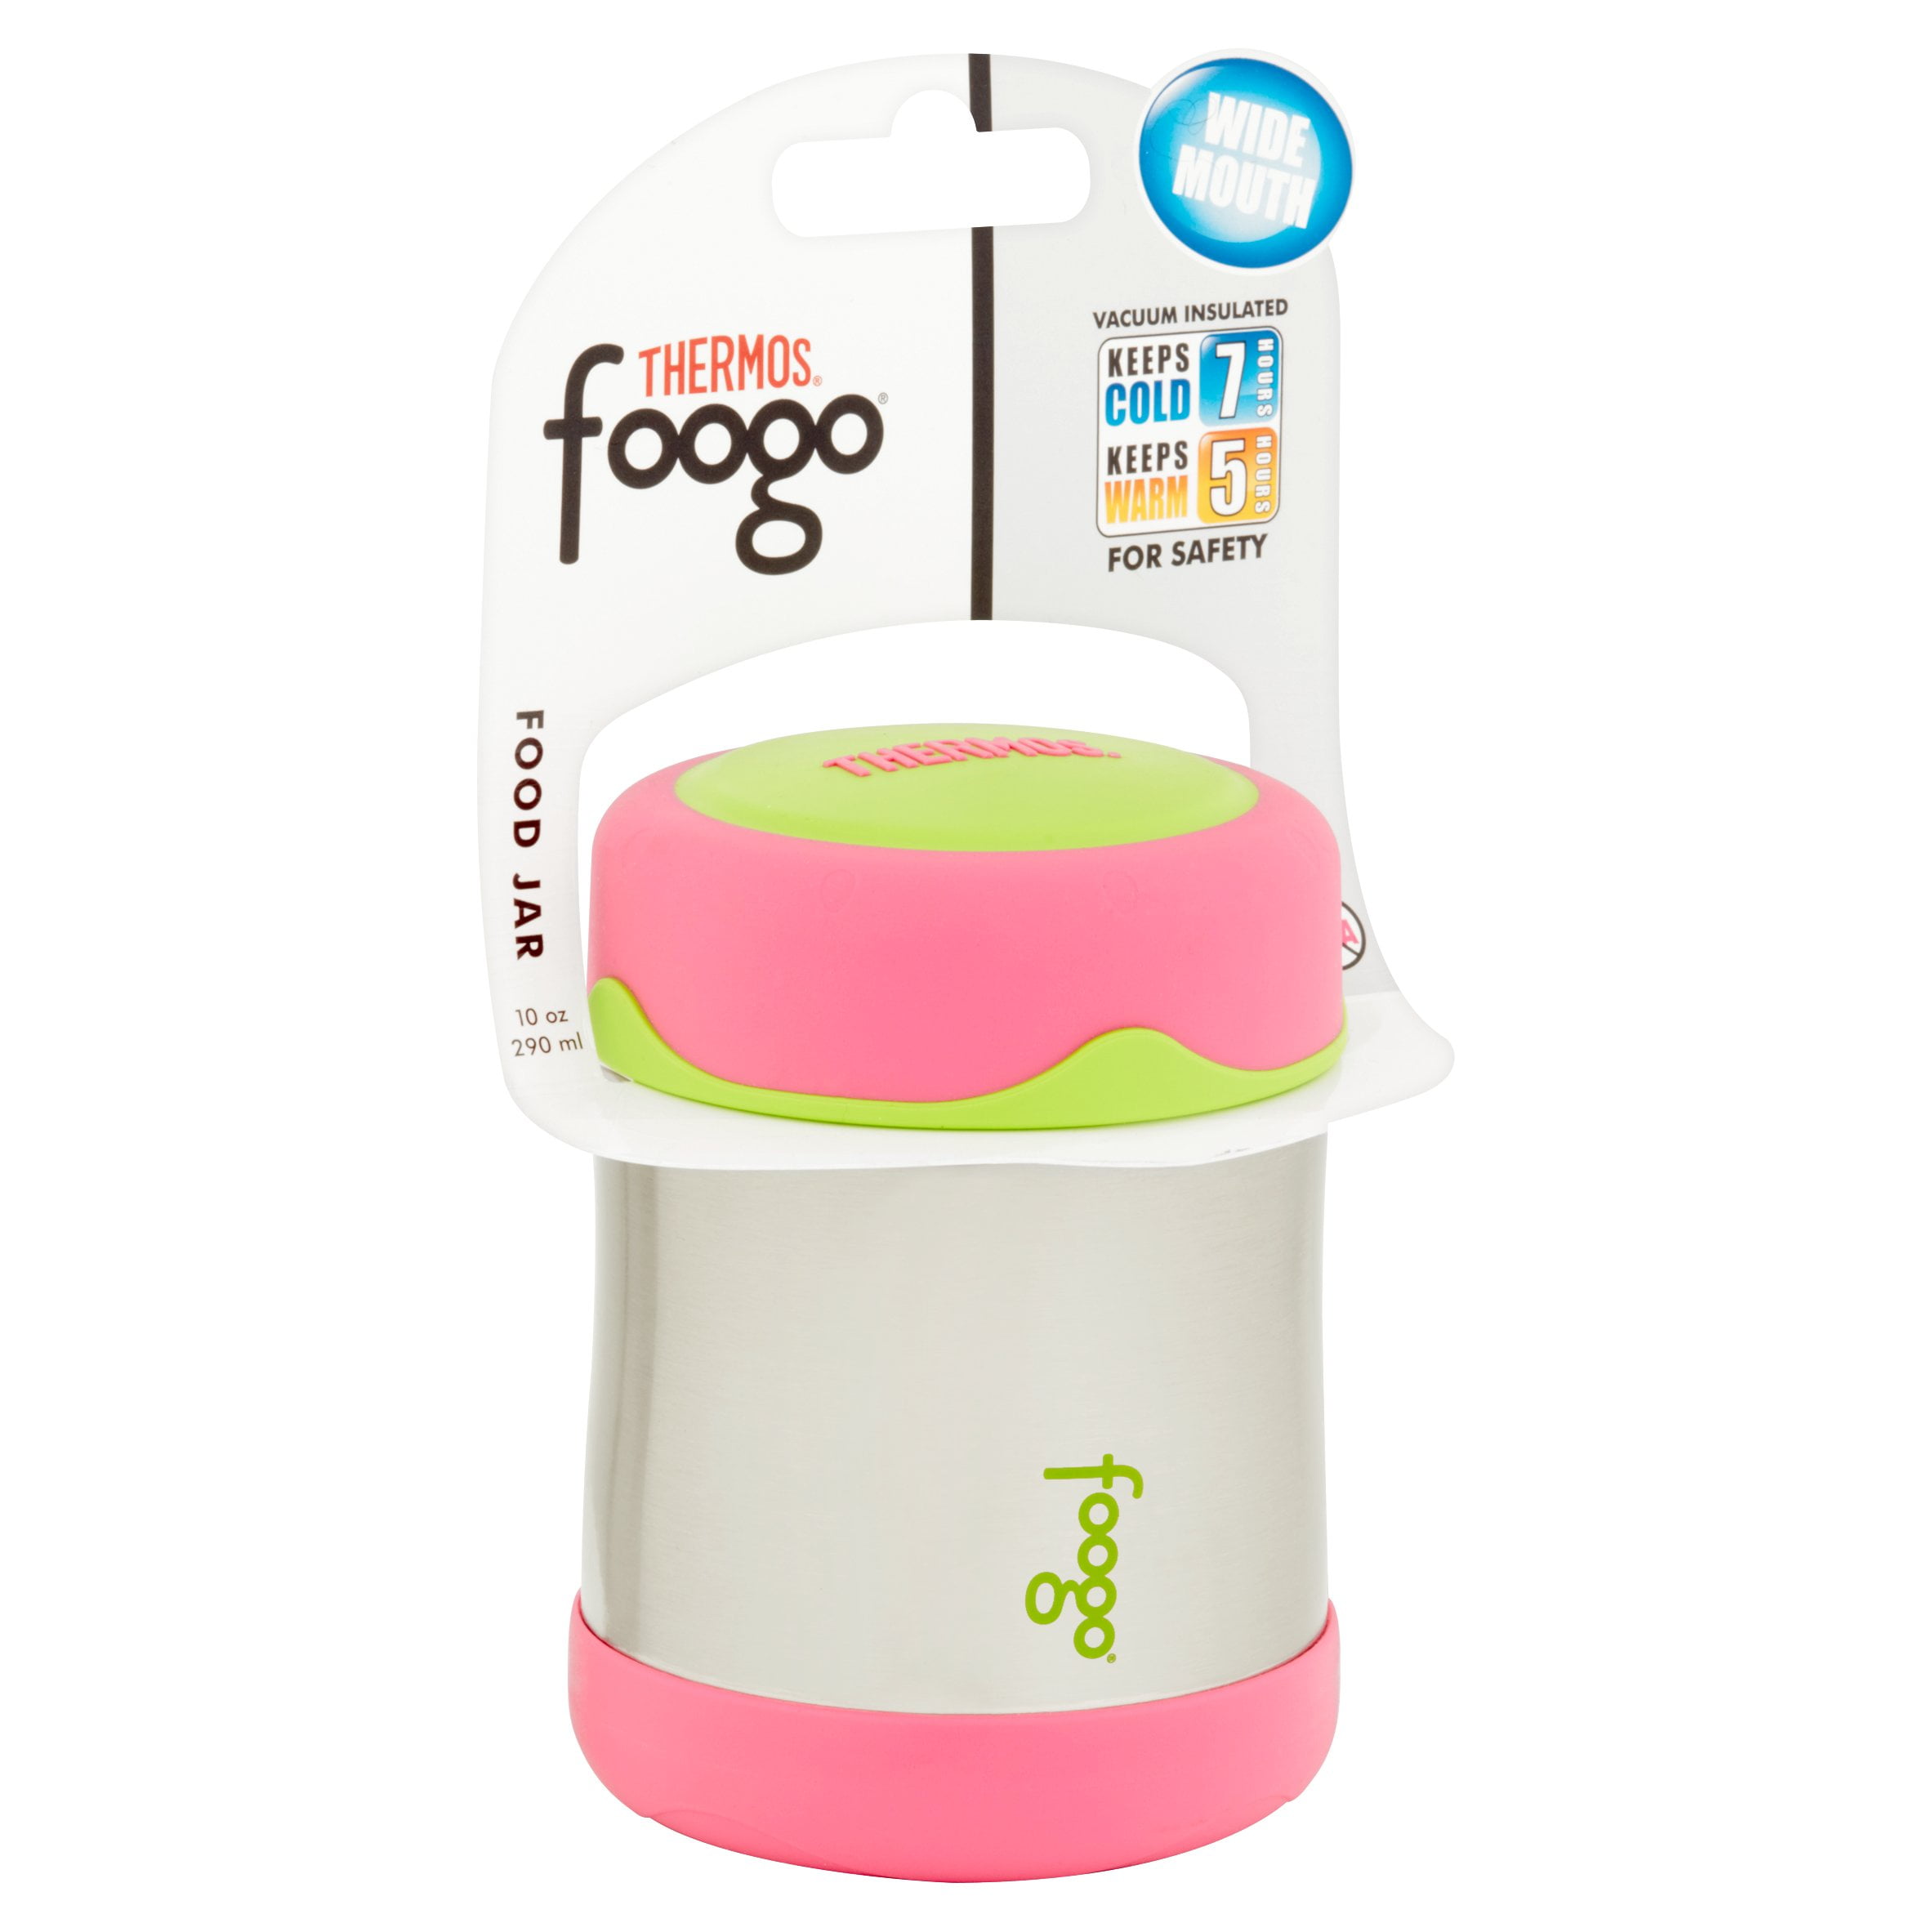 Thermos Foogo Stainless Steel Food Jar, 10 oz, Pink